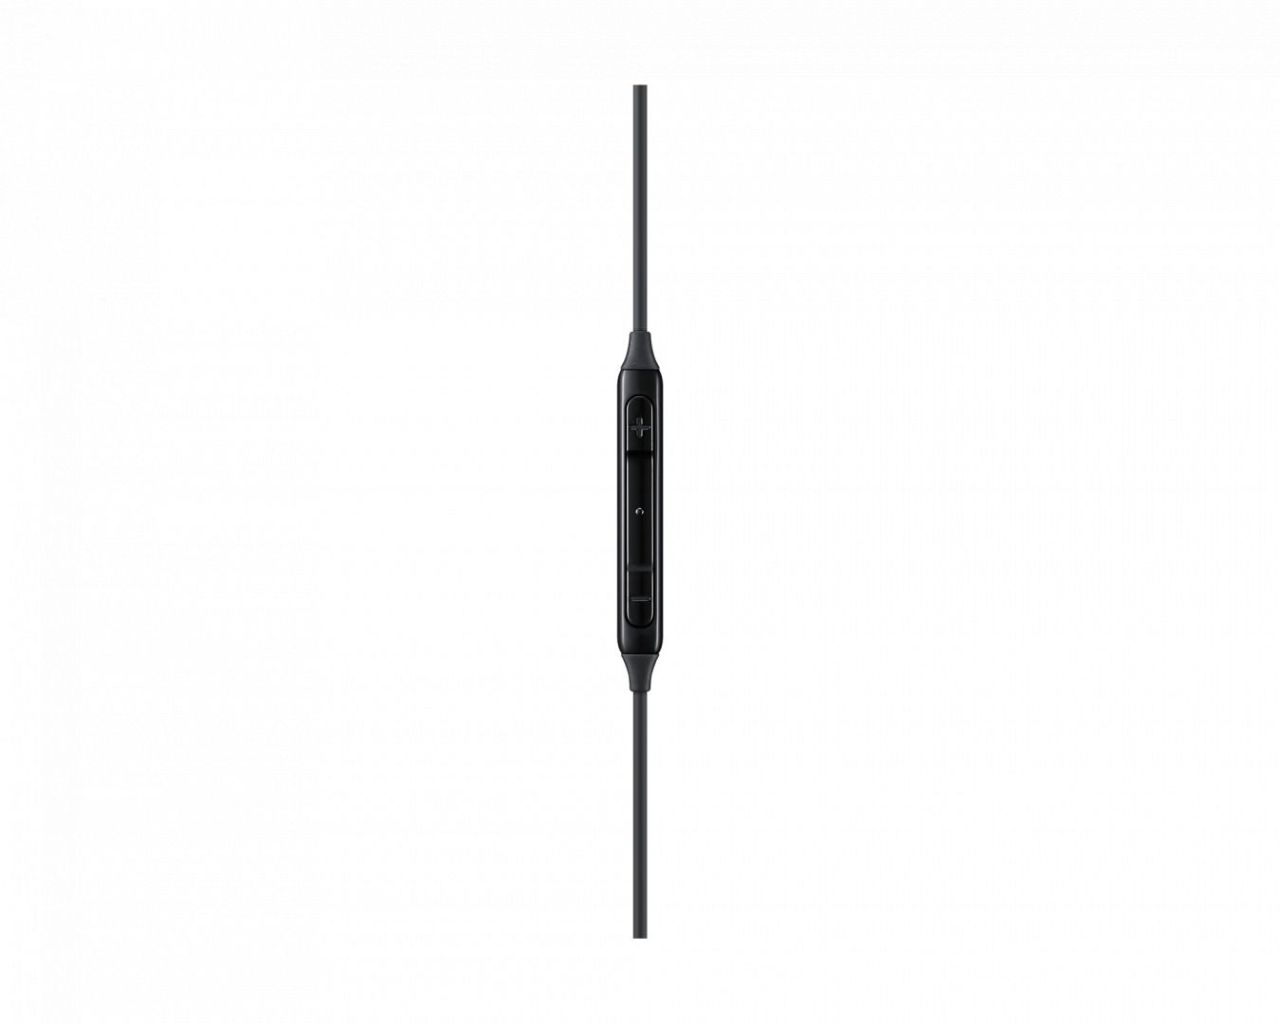 Samsung EO-IC100 AKG Headset Black